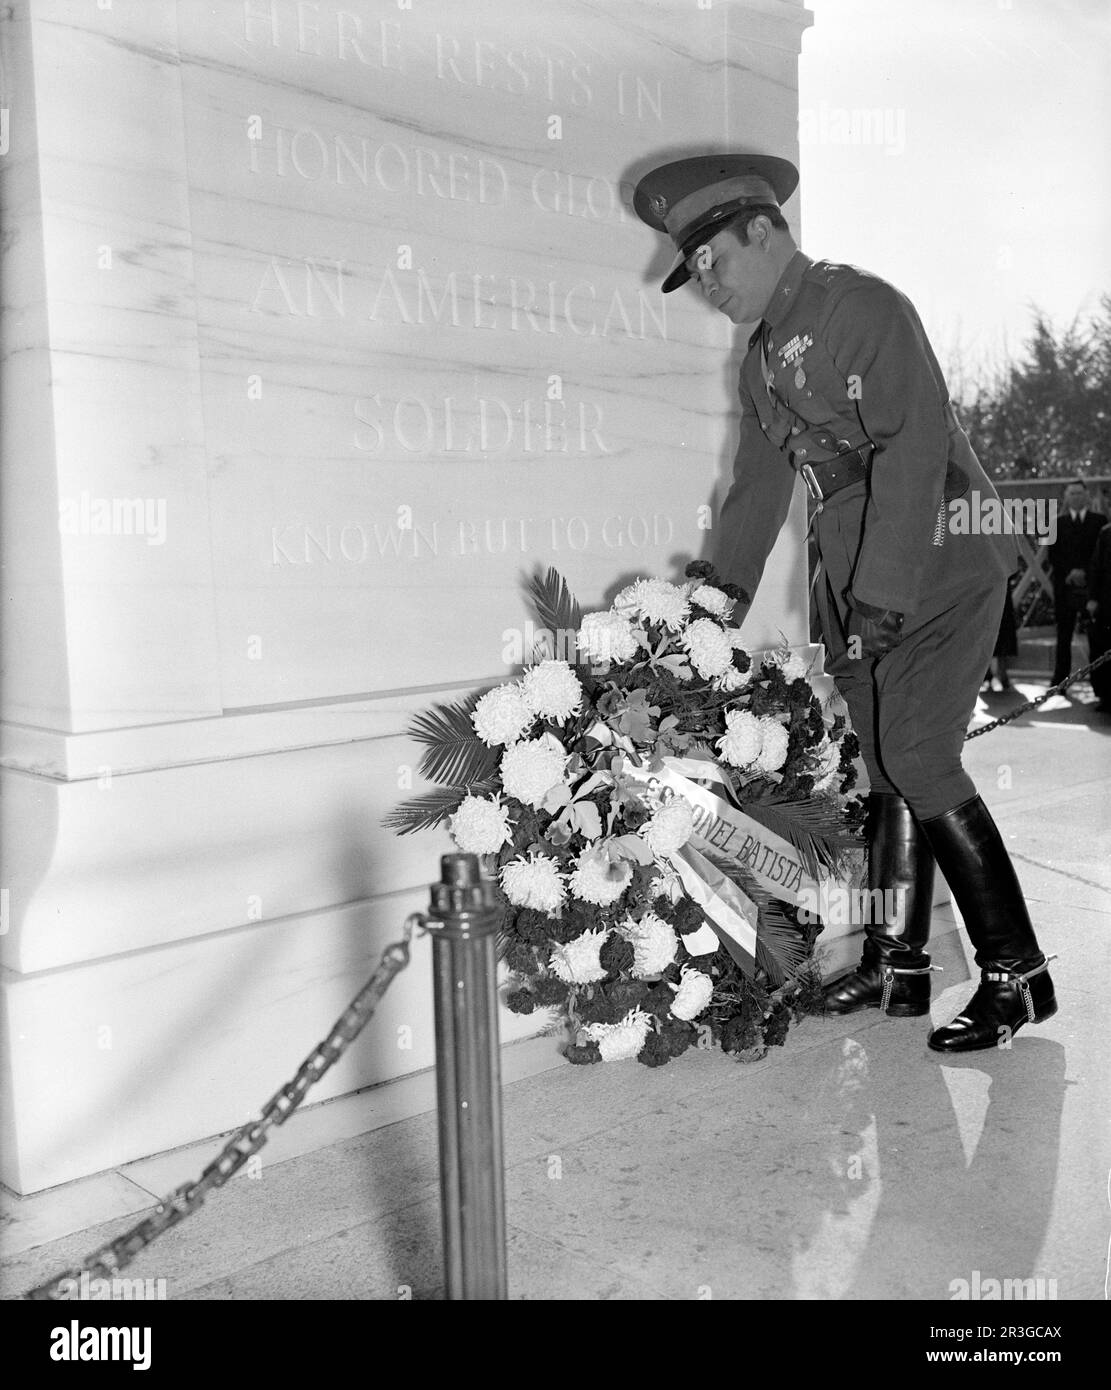 Der kubanische Soldat Fulgencio Batista, der einen Kranz am Grab des unbekannten Soldaten auf dem Arlington National Cemetery in Virginia platziert. Stockfoto